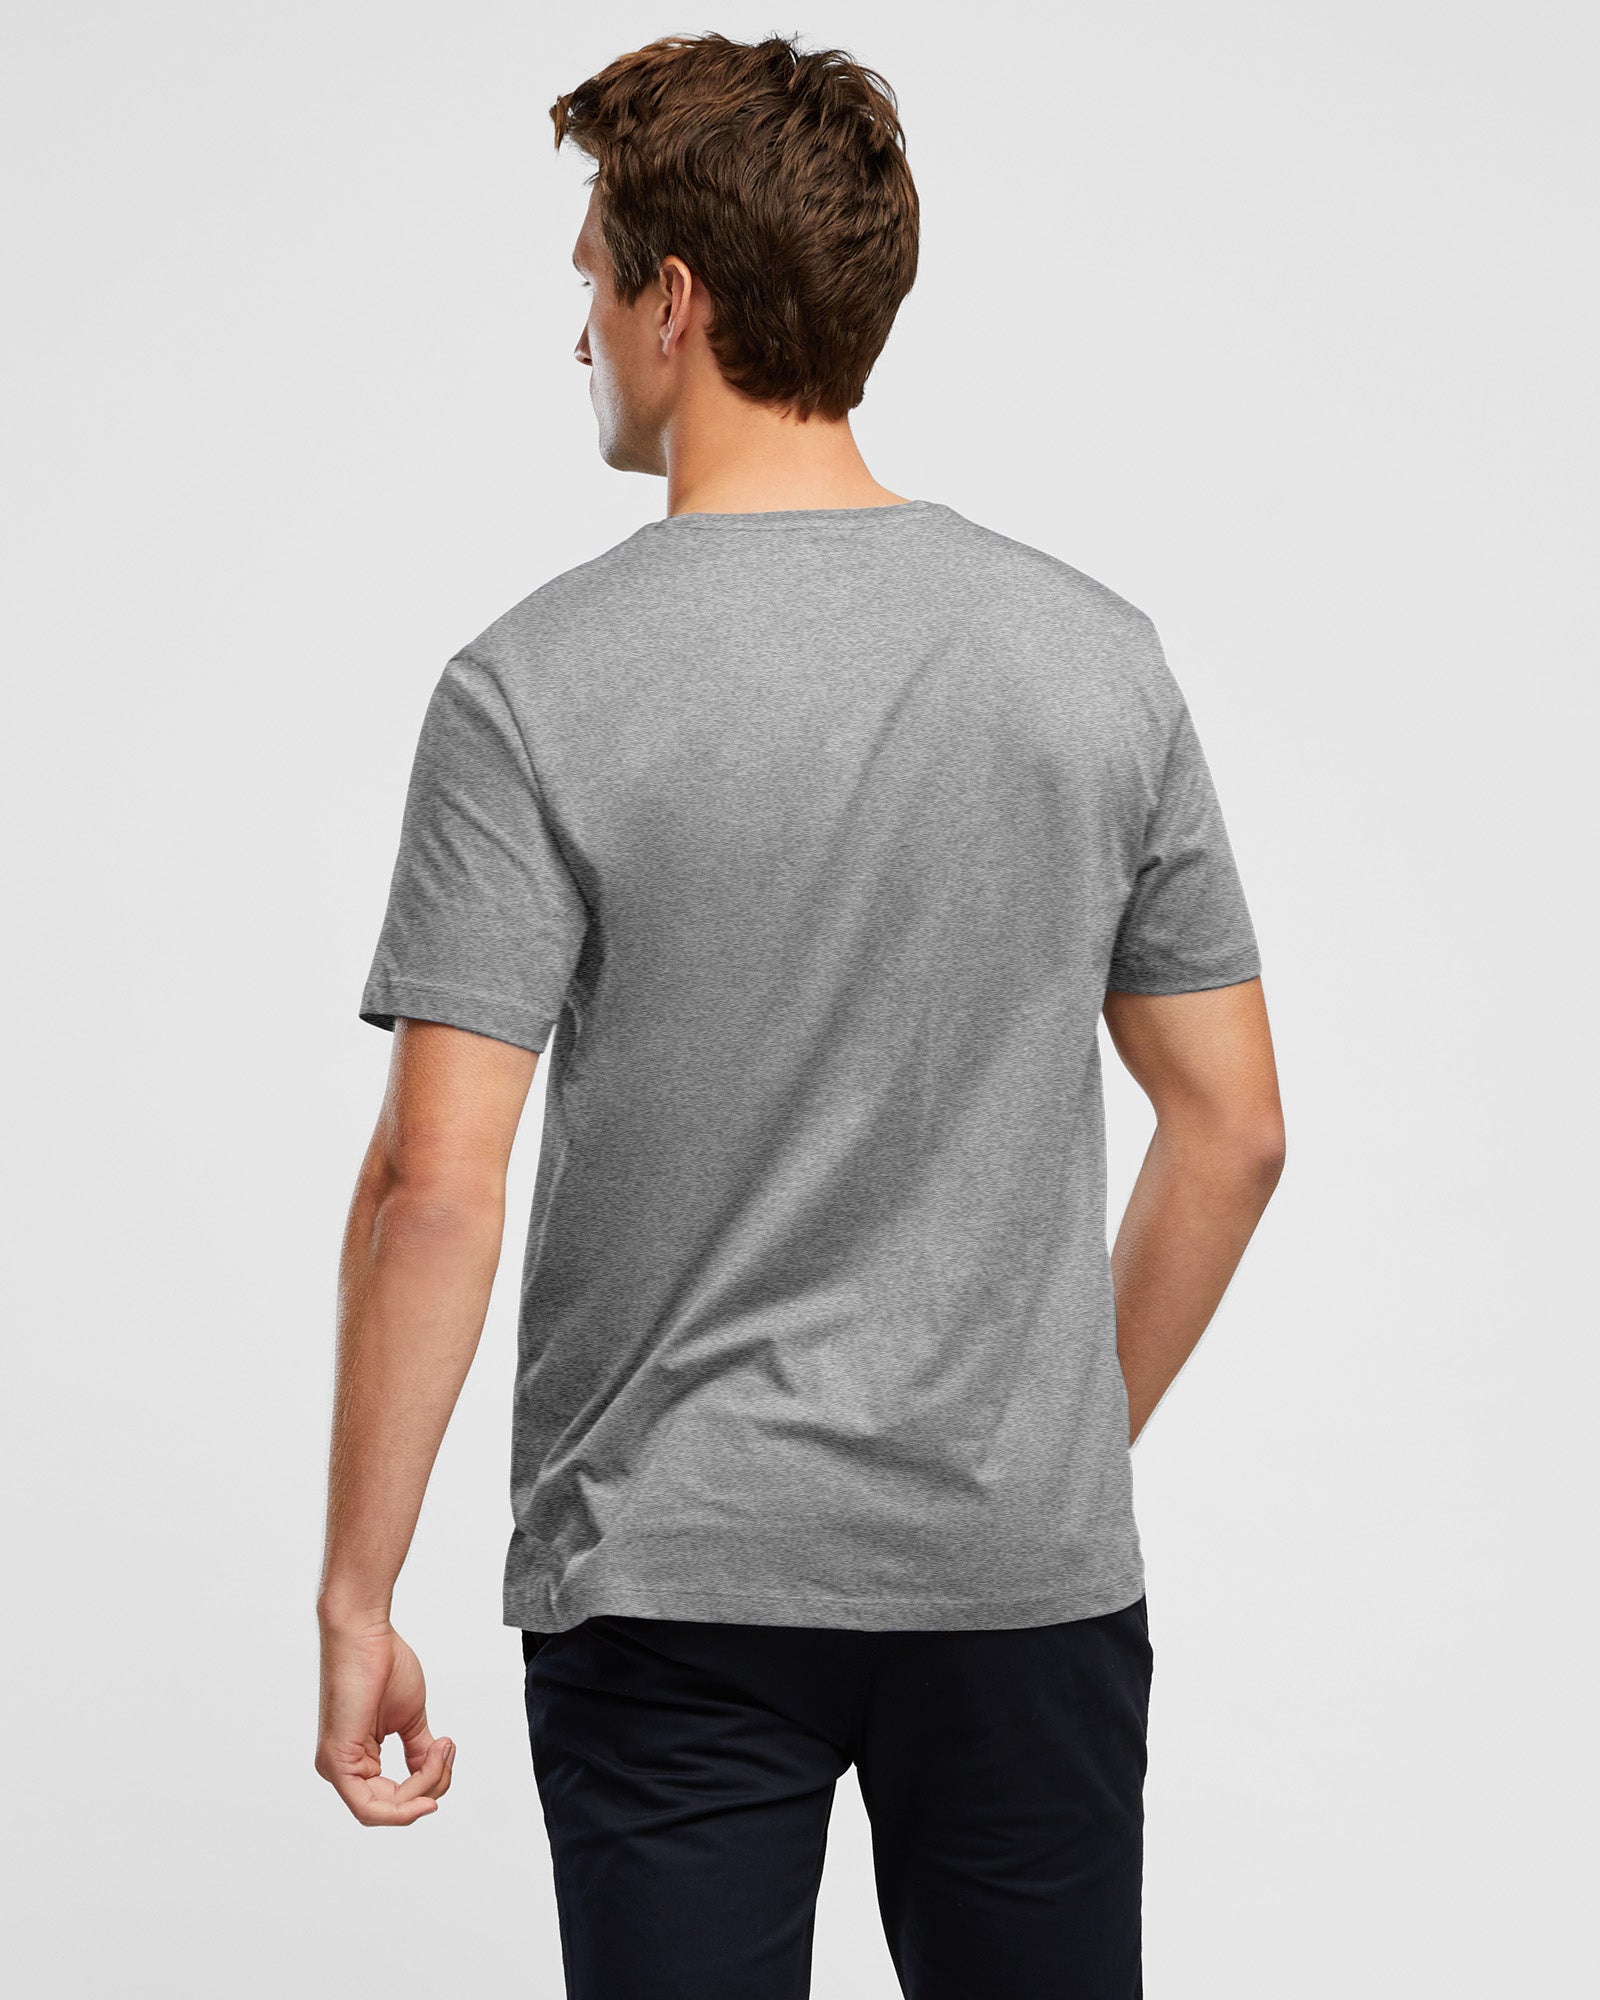 Wayver Grey Marl Crew Neck Men's T-Shirt